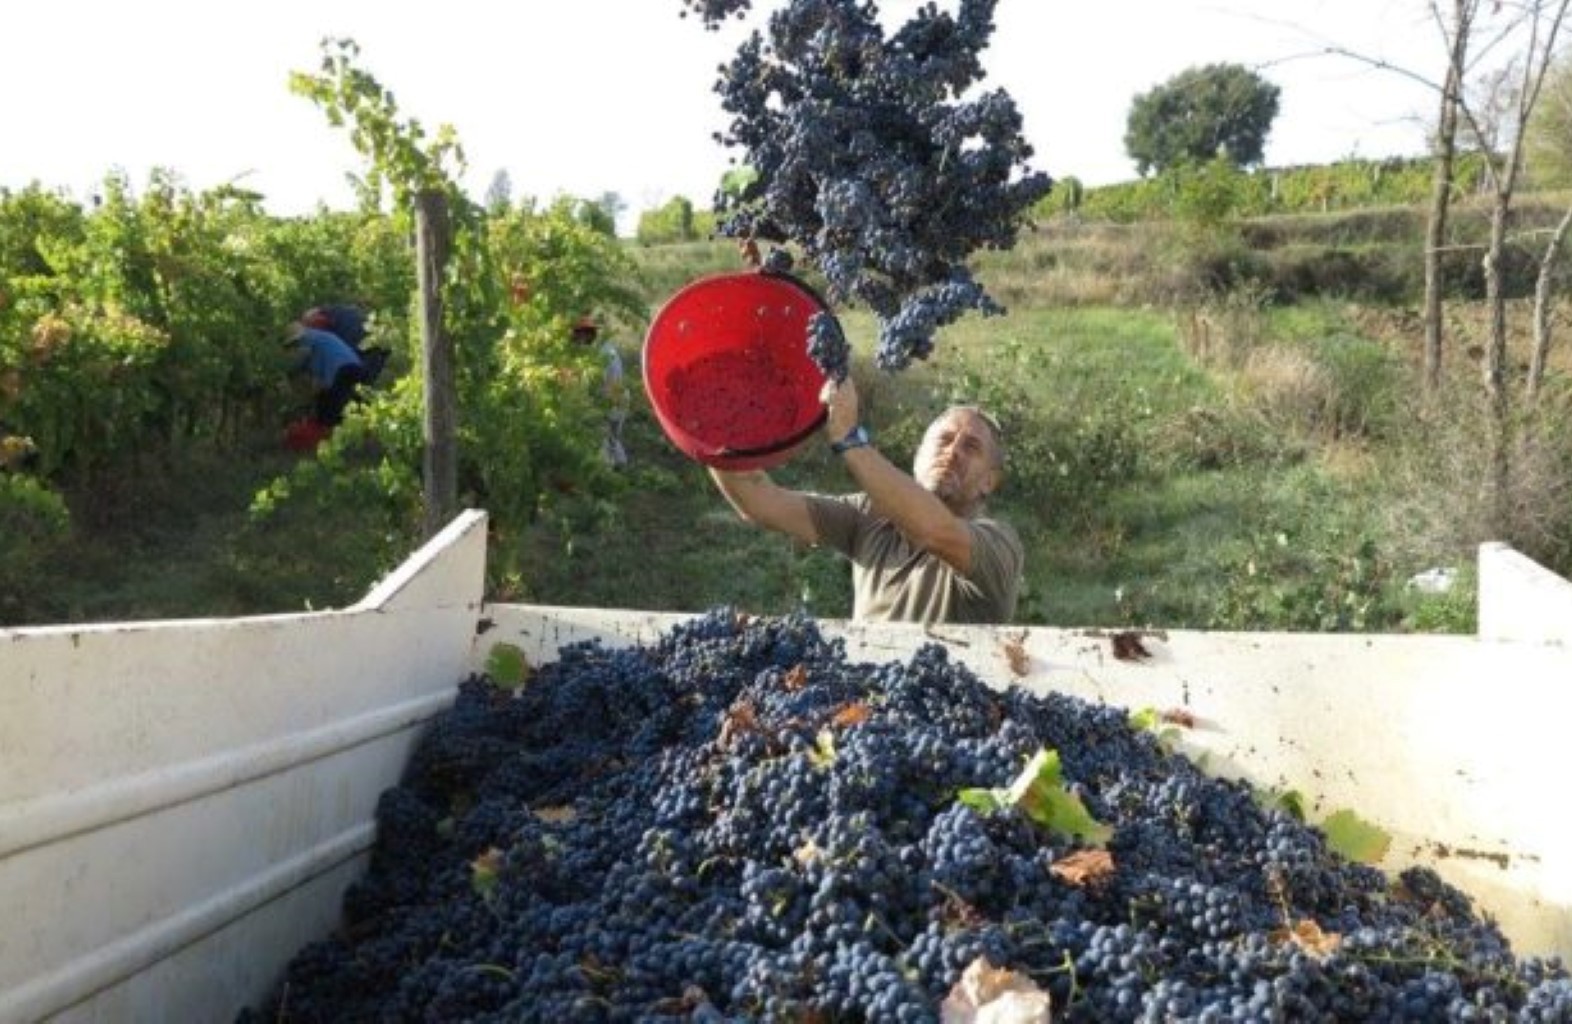 Tour del vigneto e degustazione di vini bio nel cuore dell'Umbria